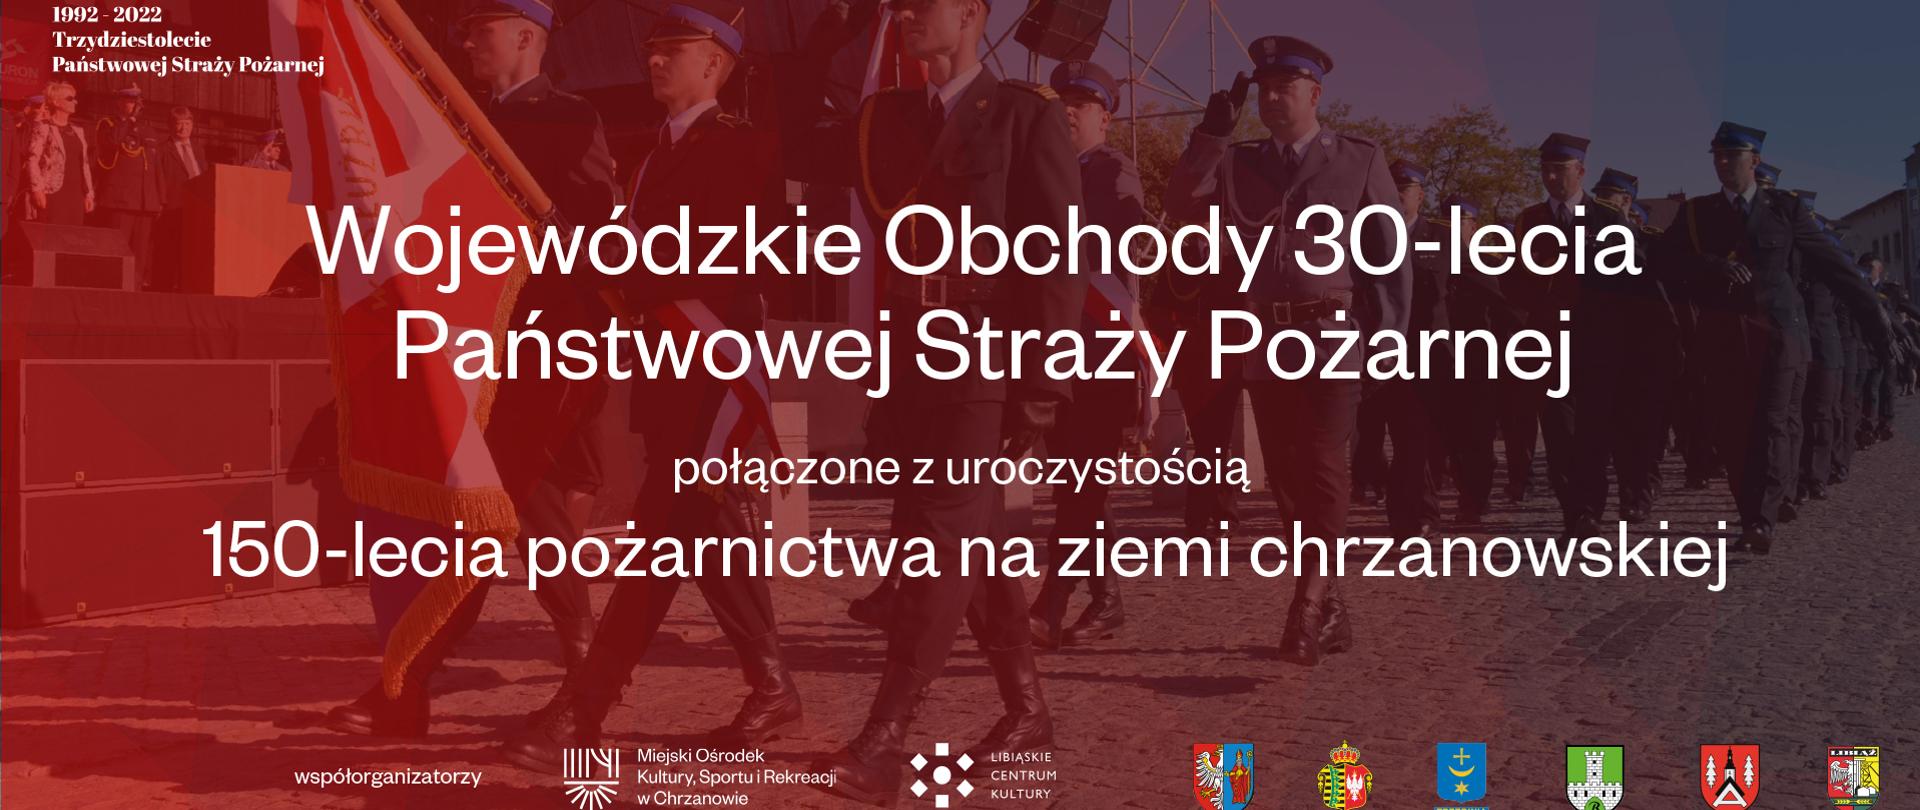 Infografika: biały napis Wojewódzkie Obchody 30-lecia Państwowej Straży Pożarnej połączone z uroczystością 150-lecia pożarnictwa na ziemi chrzanowskiej